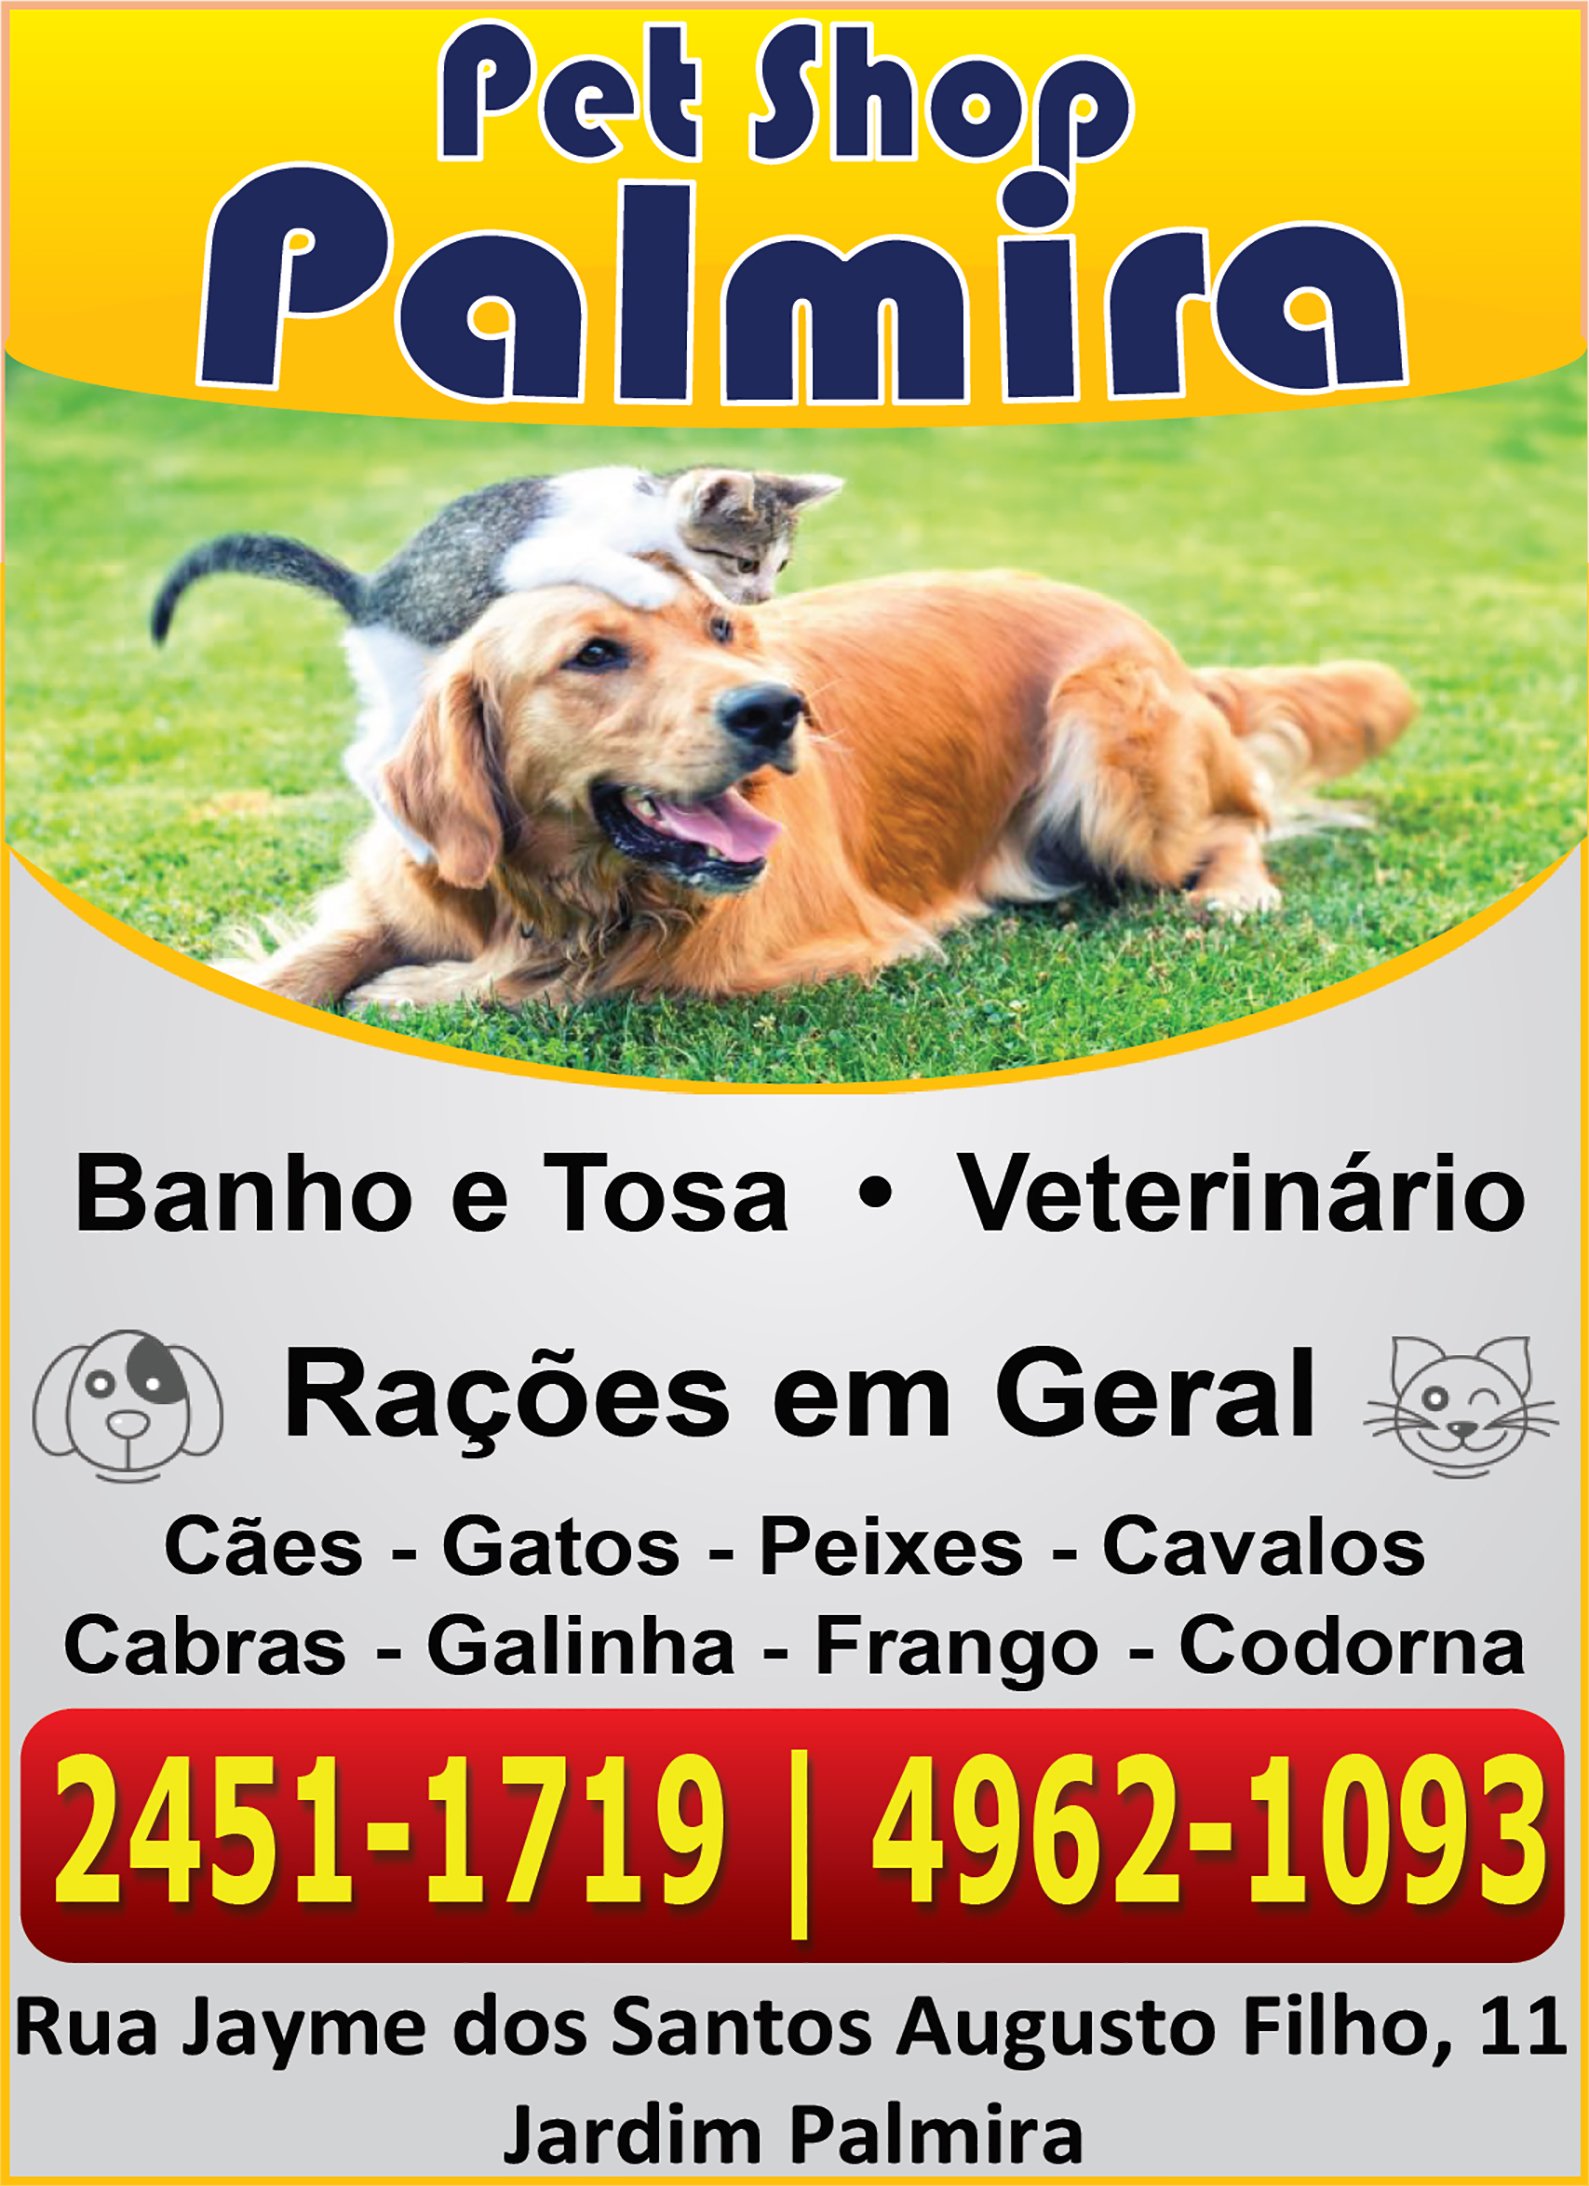 Pet Shop Palmira - Banho e Tosa - Veterinrio e Raes em Geral para ces, gatos, peixes, hammsters, cavalos, cabras, galinhas, frangos ou codornas